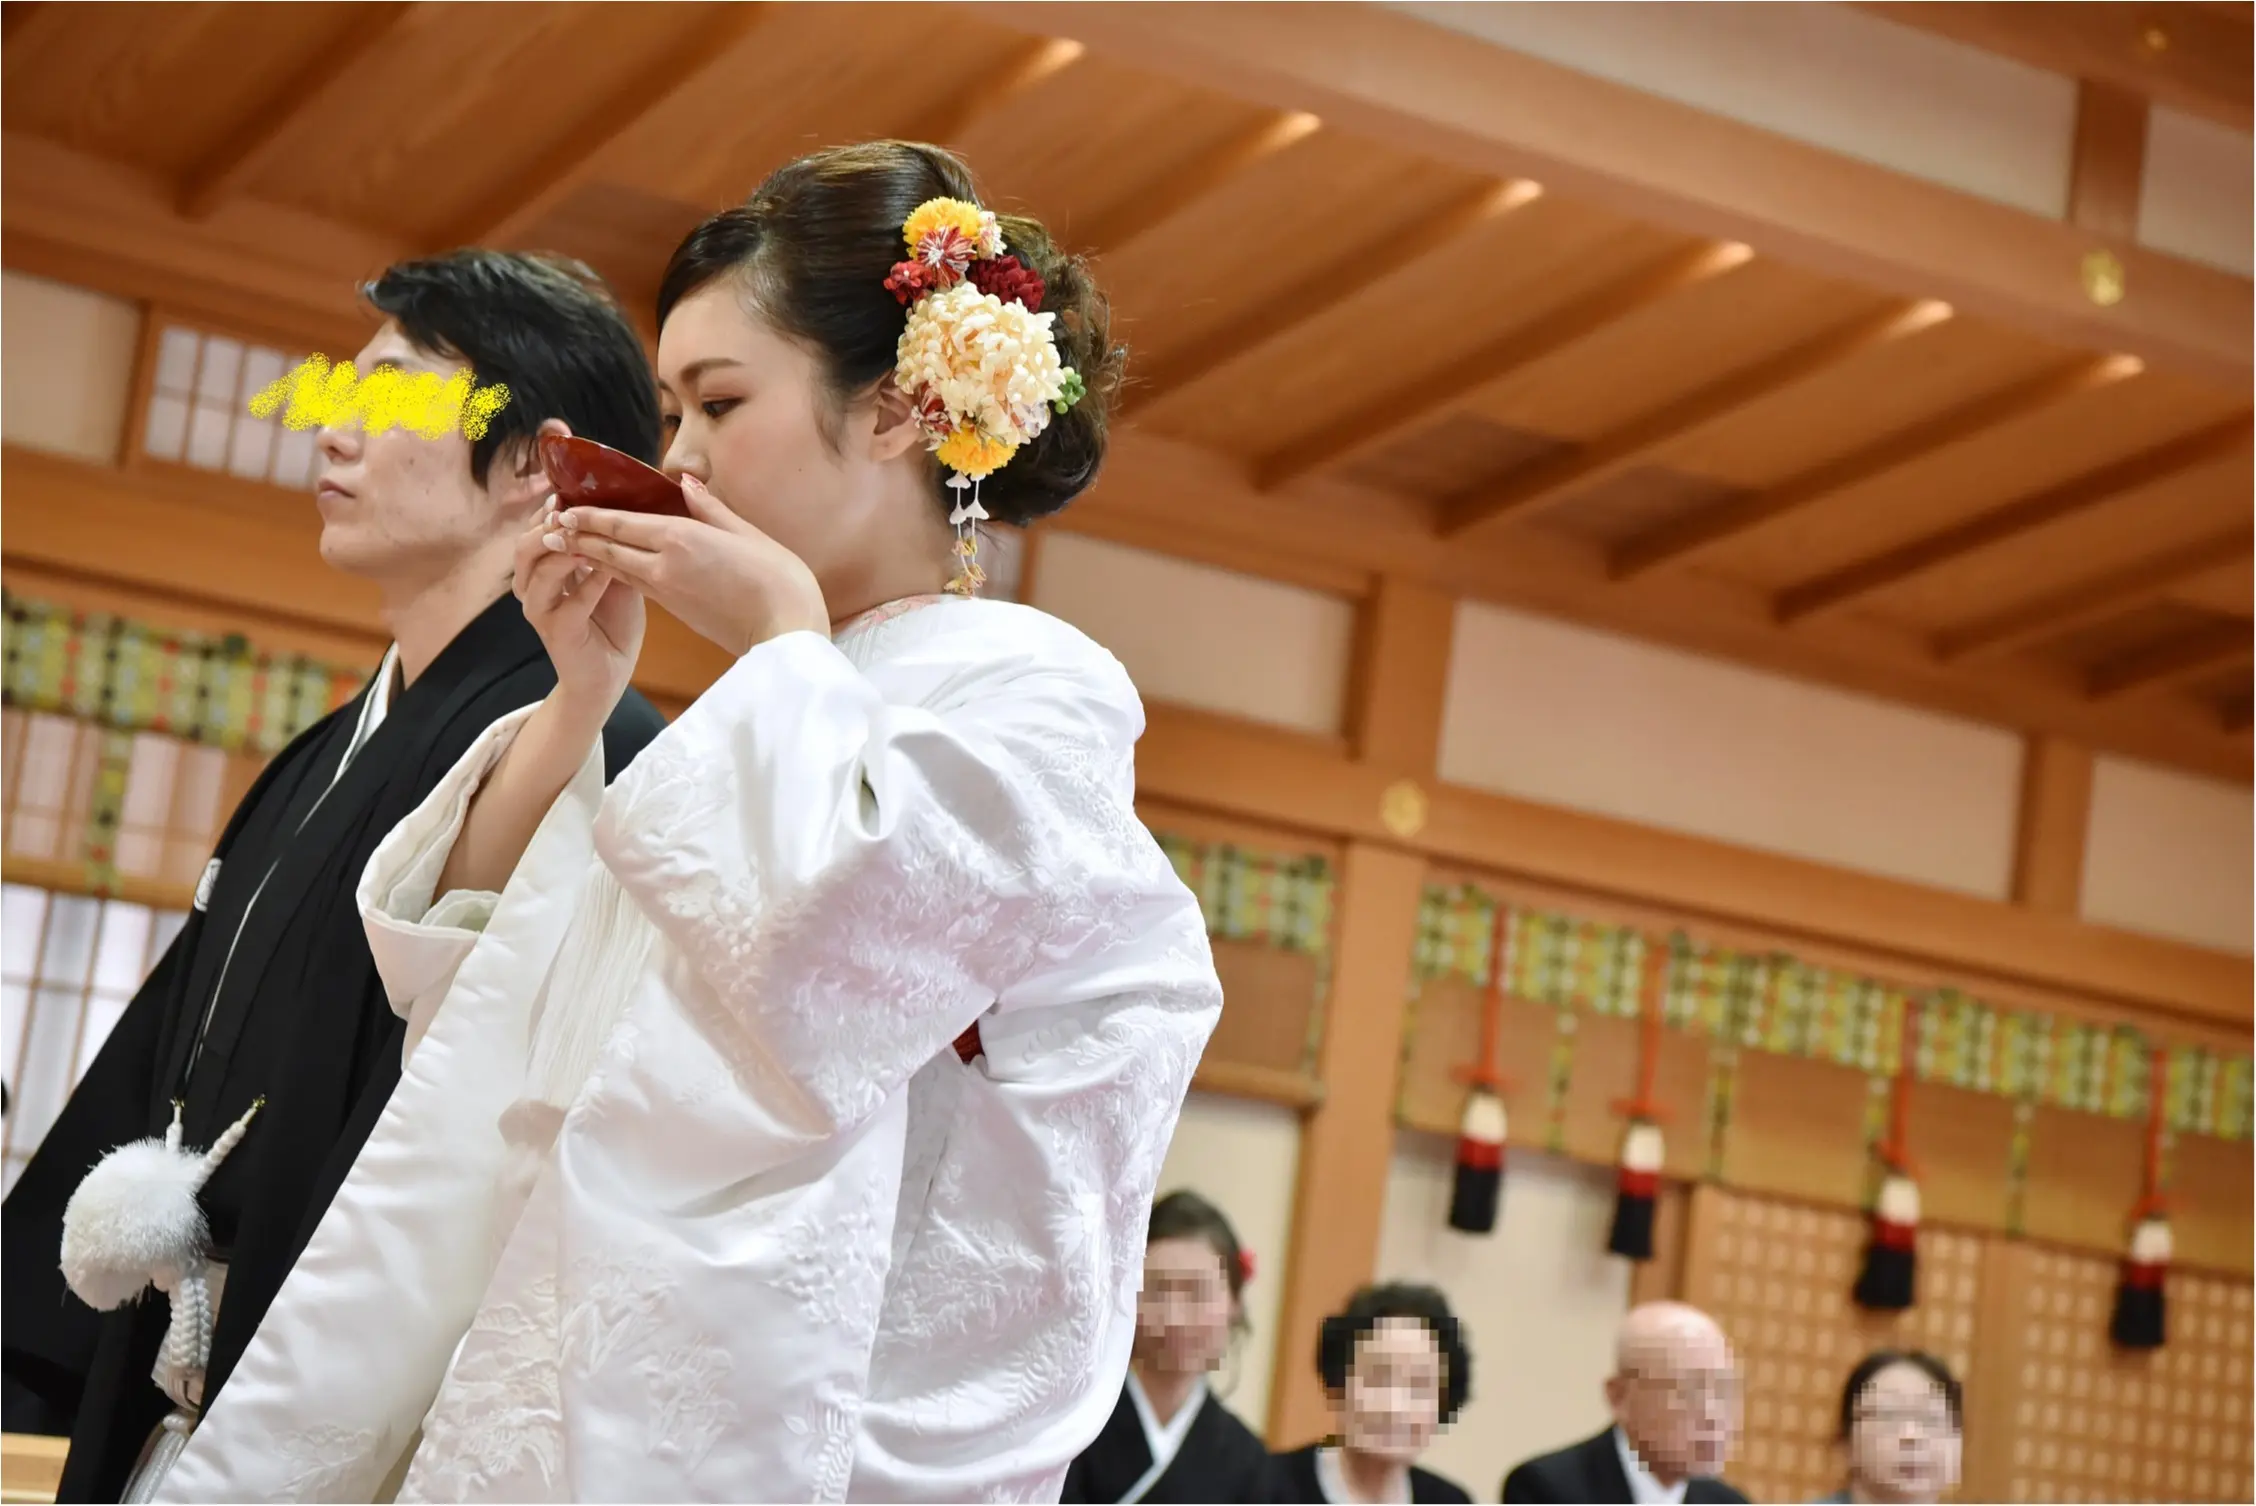 ゆりっぺ婚part2 式をするまで大波乱 でも神前式にしてよかった 奈良にある日本最古の神社で憧れの白無垢を Moreインフルエンサーズブログ Daily More